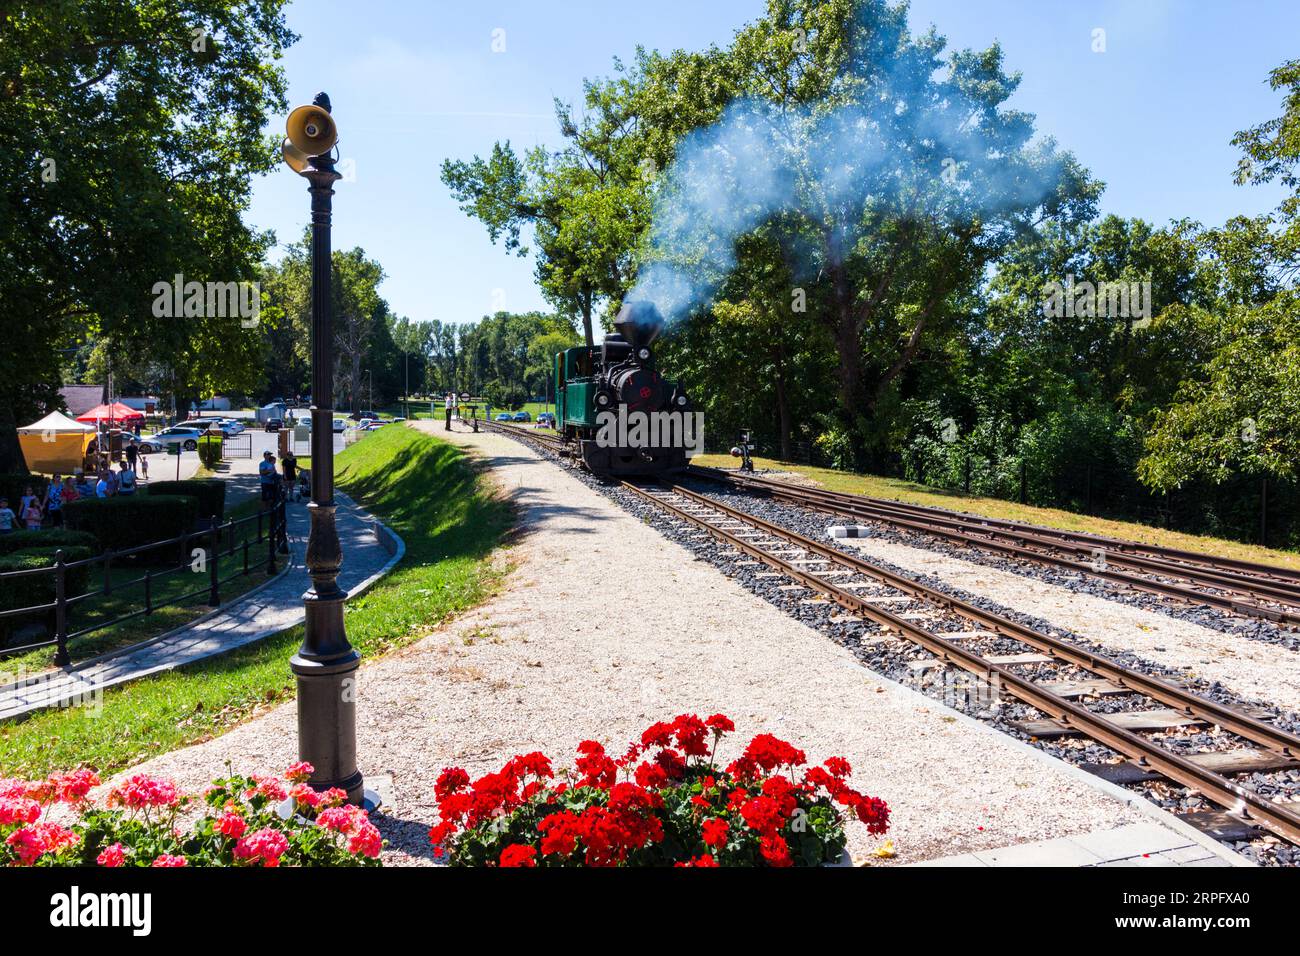 Nagycenki Szechenyi Muzeumvasut chemin de fer à voie étroite de 760mm (2 ft 6 in). Locomotive à vapeur Andras, Nagycenk, Hongrie Banque D'Images